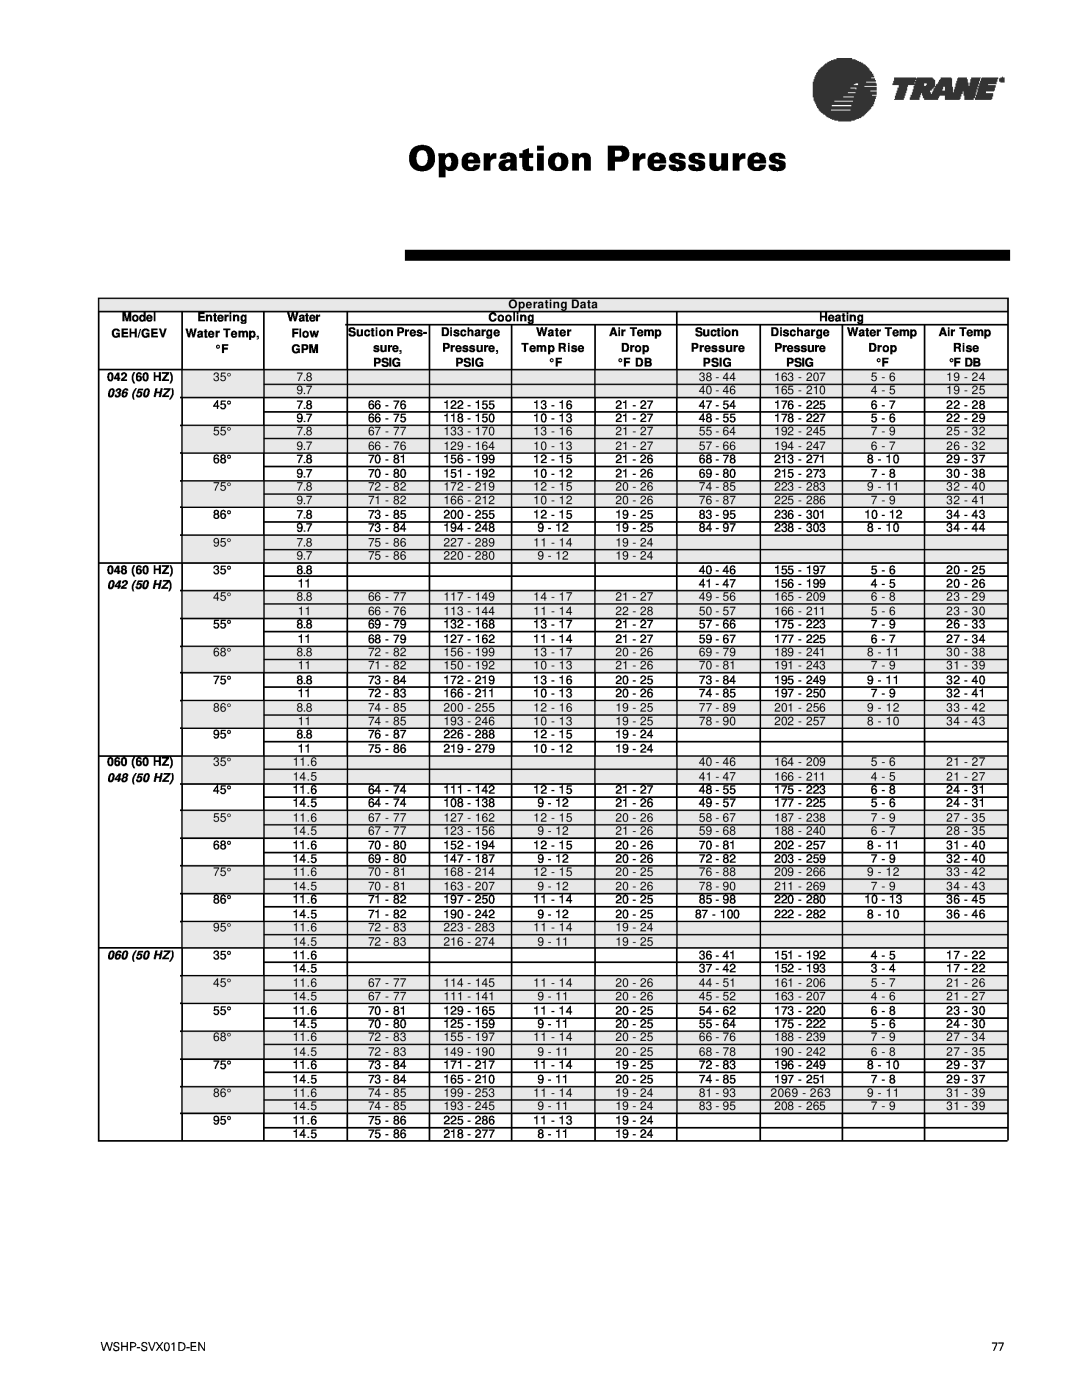 Trane manual Operation Pressures, Model GEH/GEV 042 60 HZ, 036 50 HZ, 042 50 HZ, 048 50 HZ 060 50 HZ 